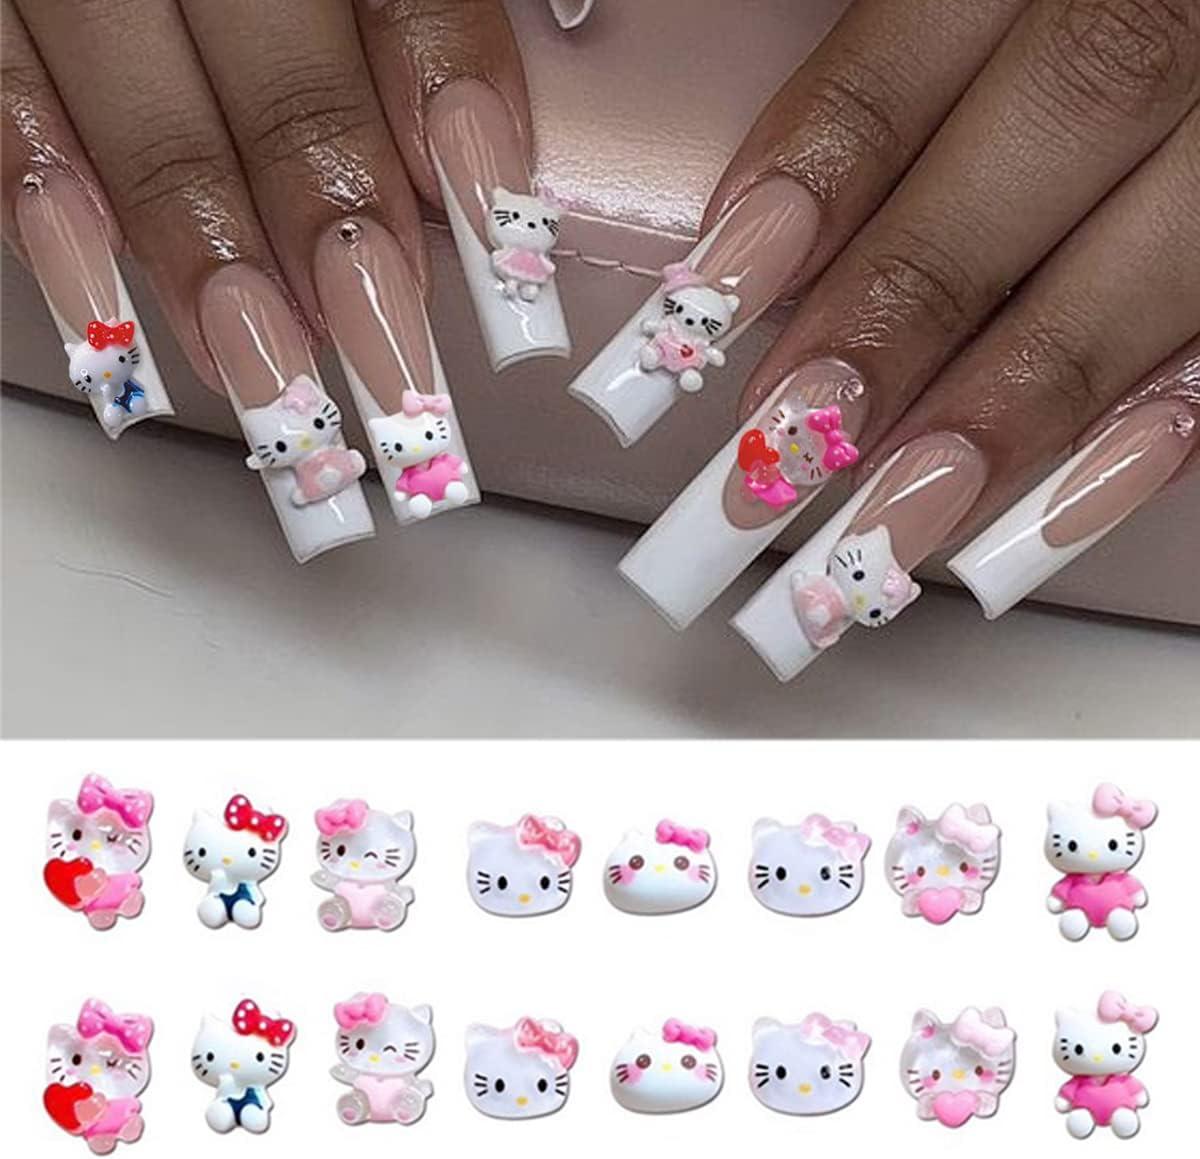 cute hello kitty acrylic nails